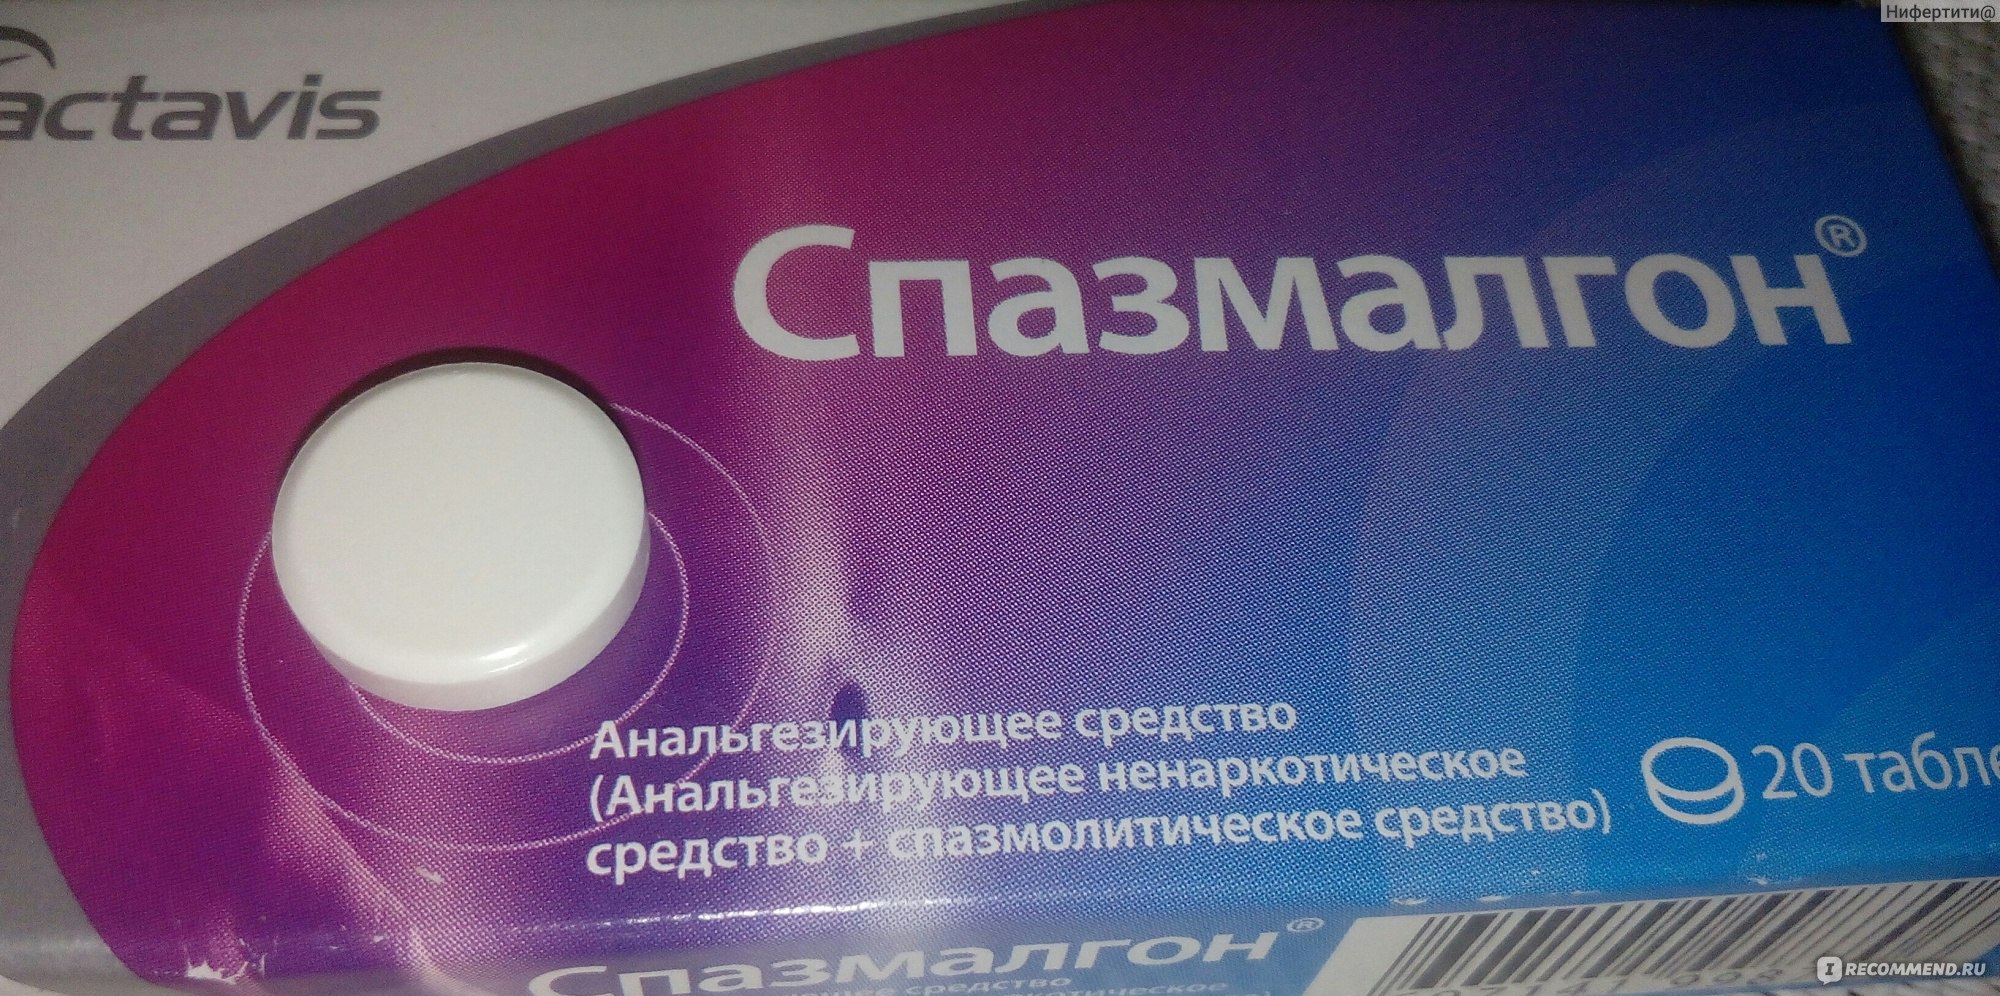 Спазмалгон Цена В Москве 20 Таблеток